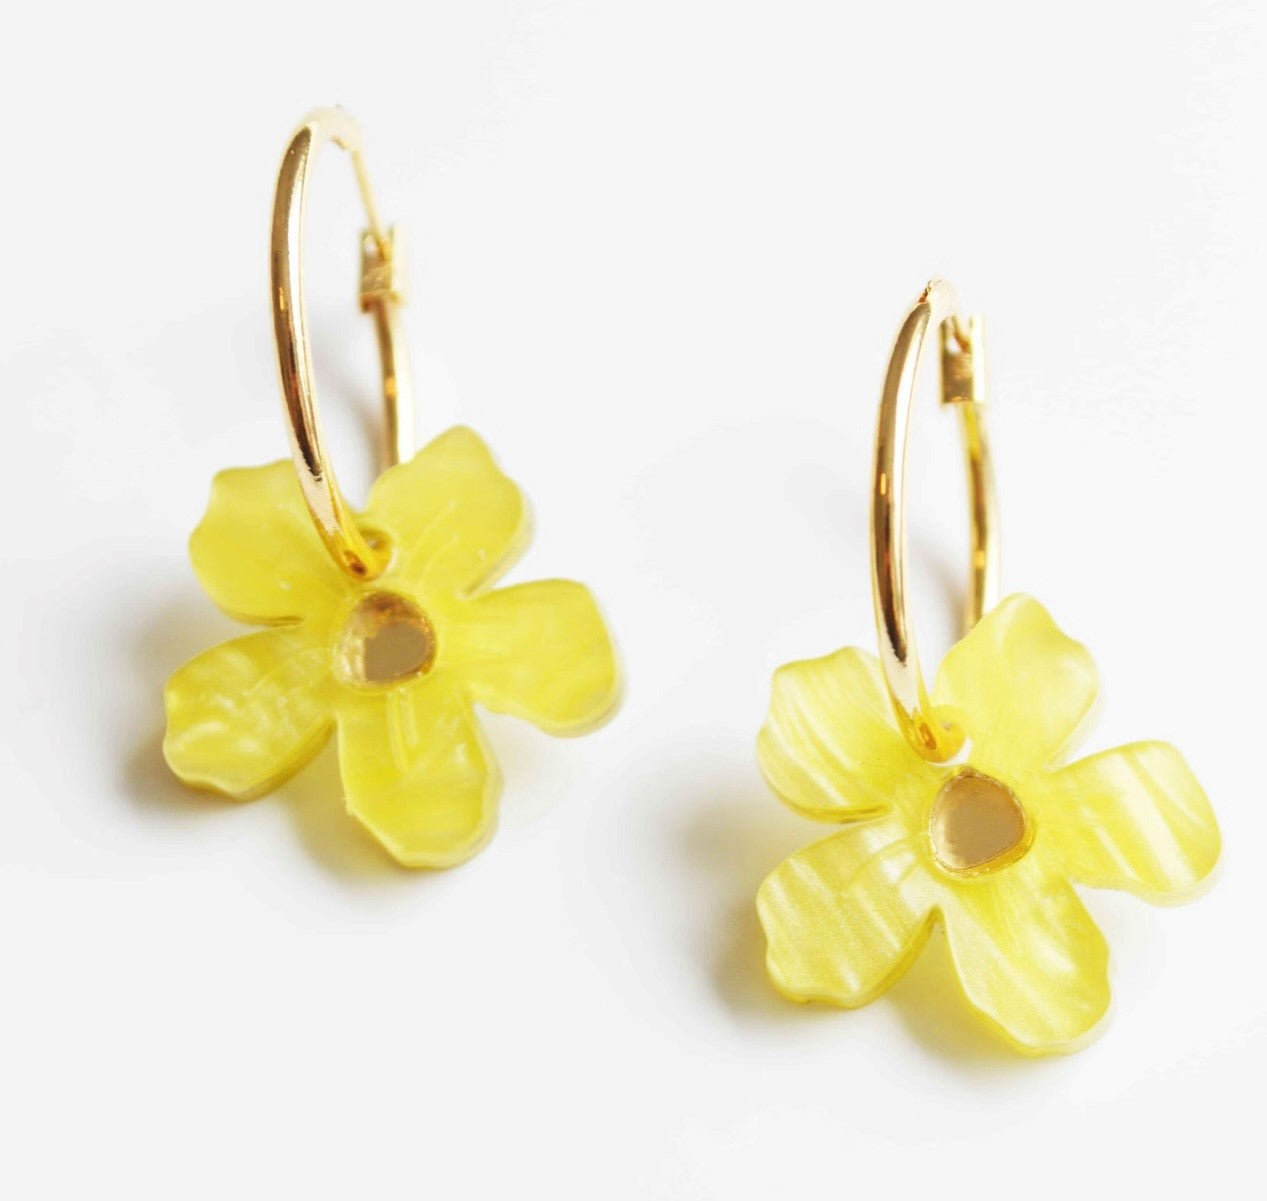 Hagen + Co Wildflowers Earrings - Buttercup